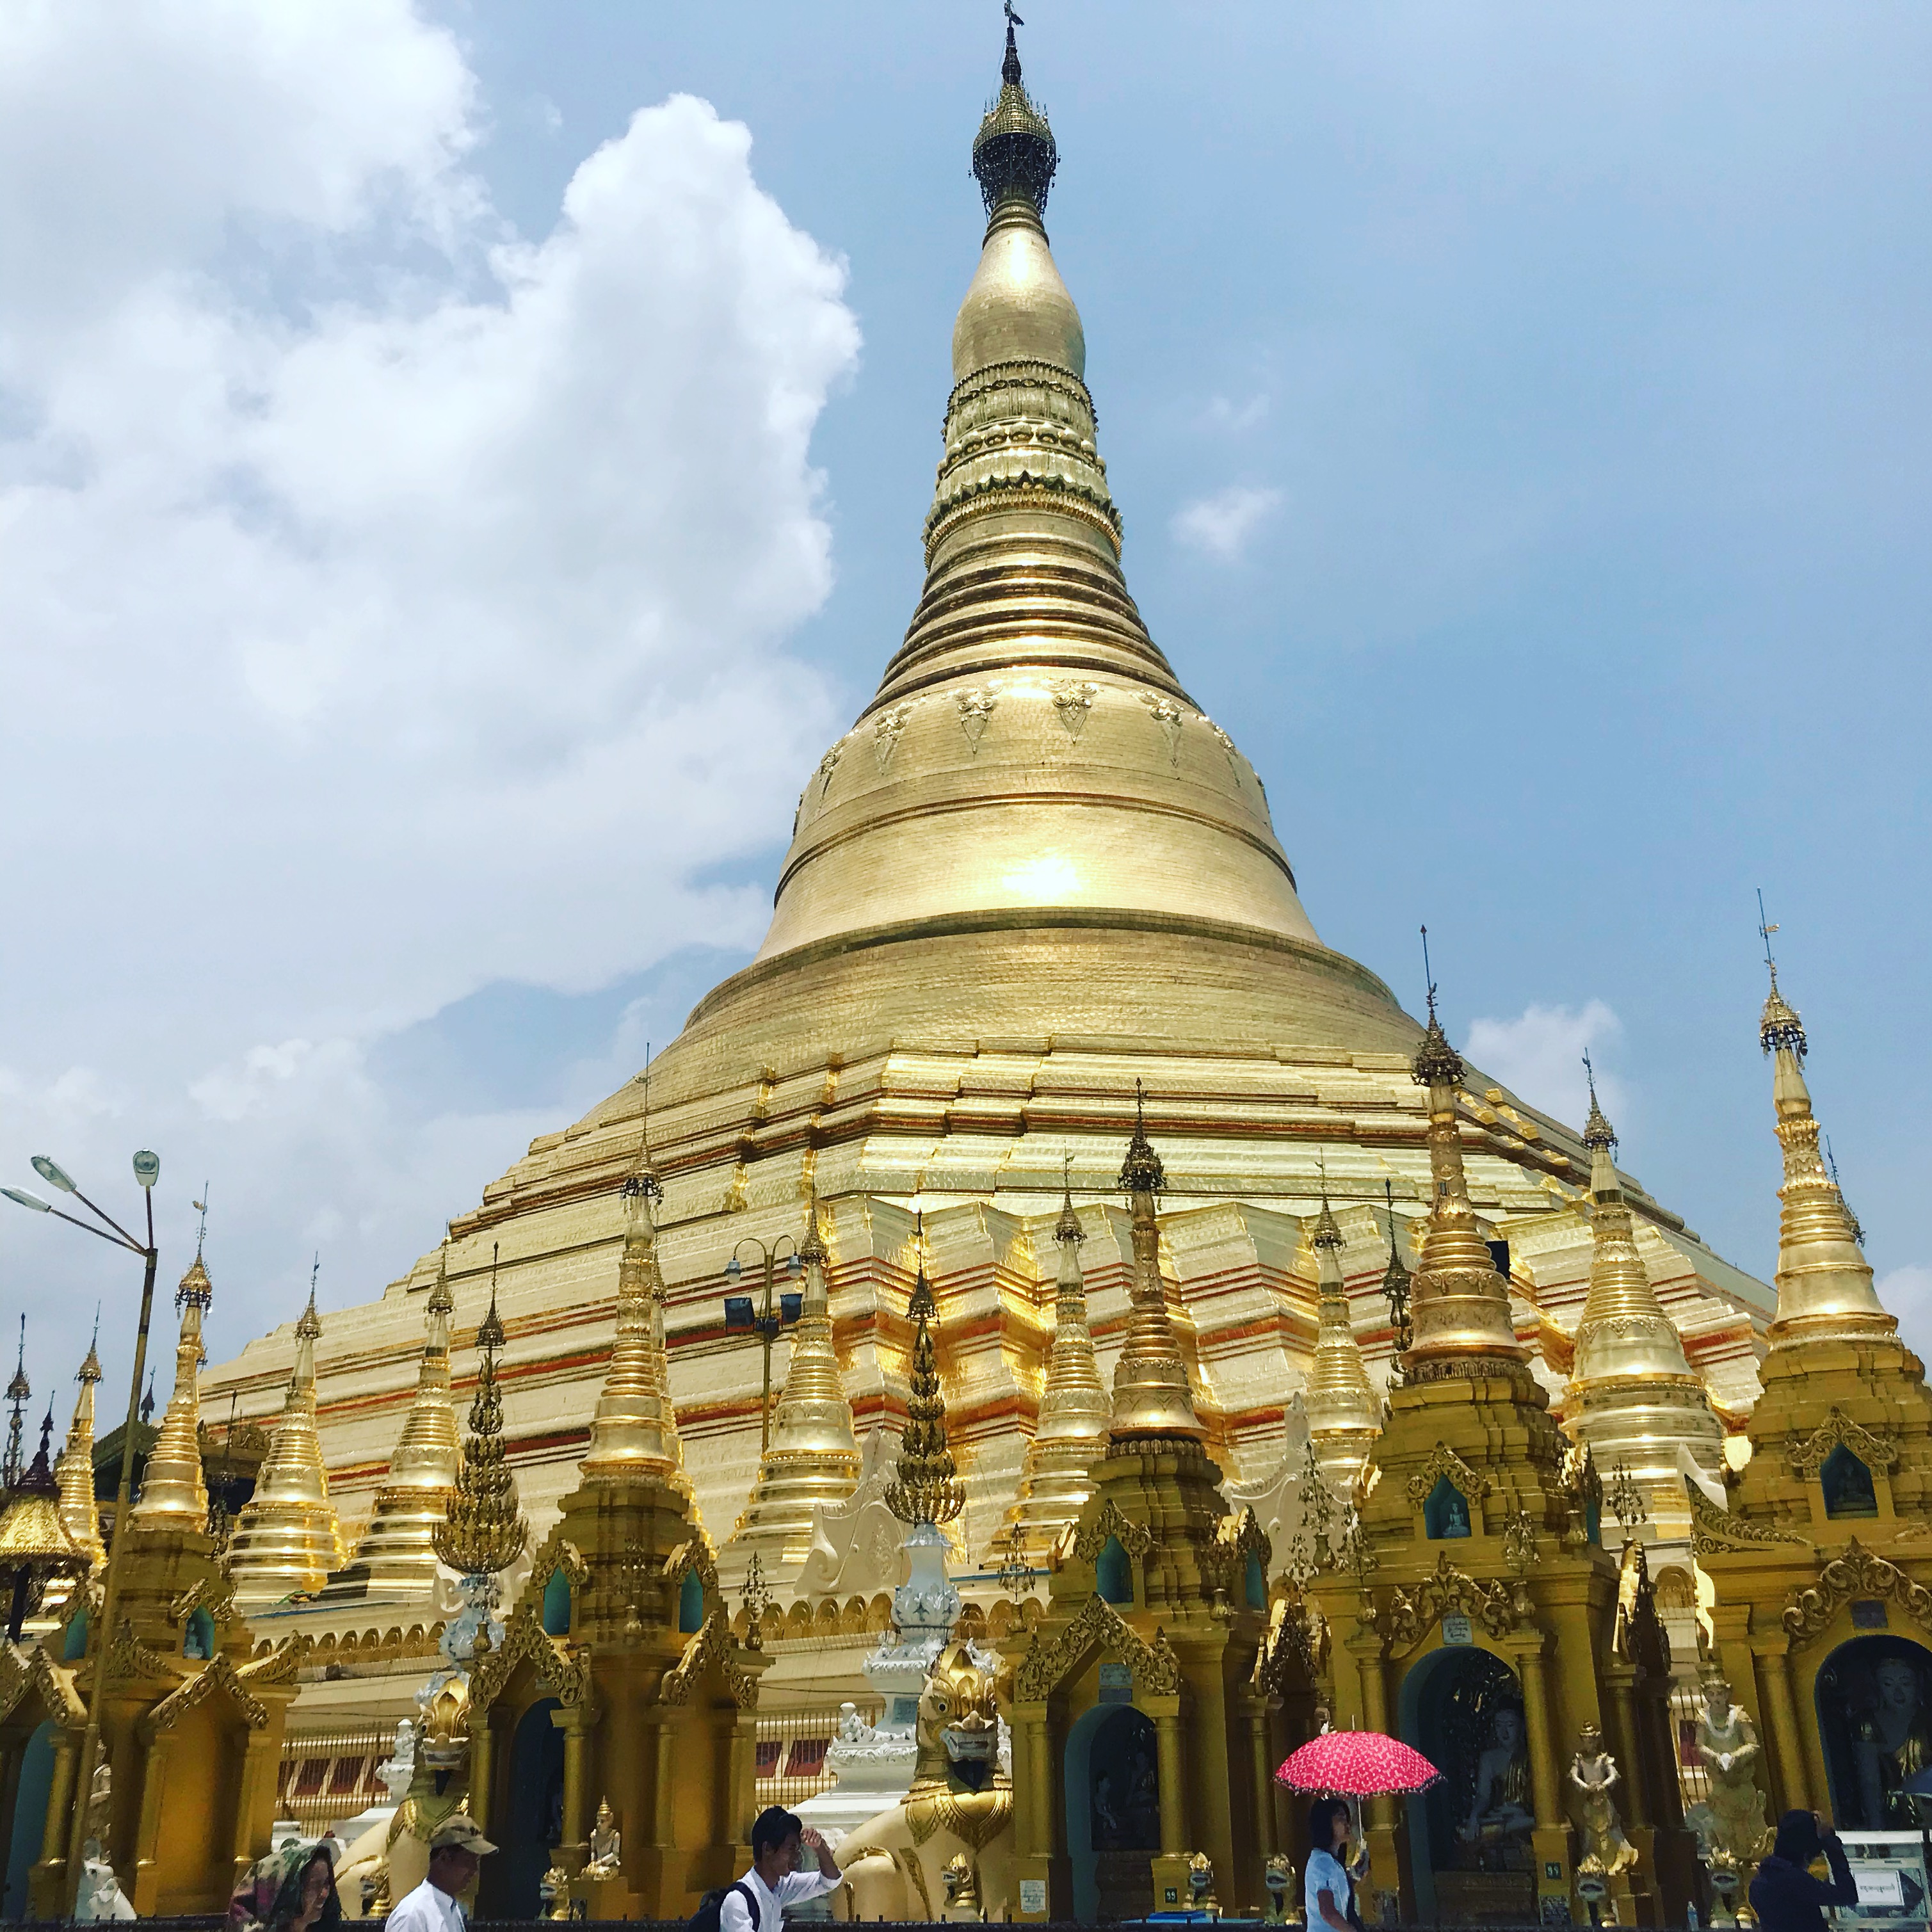 Mianmar/Burma - Yangon